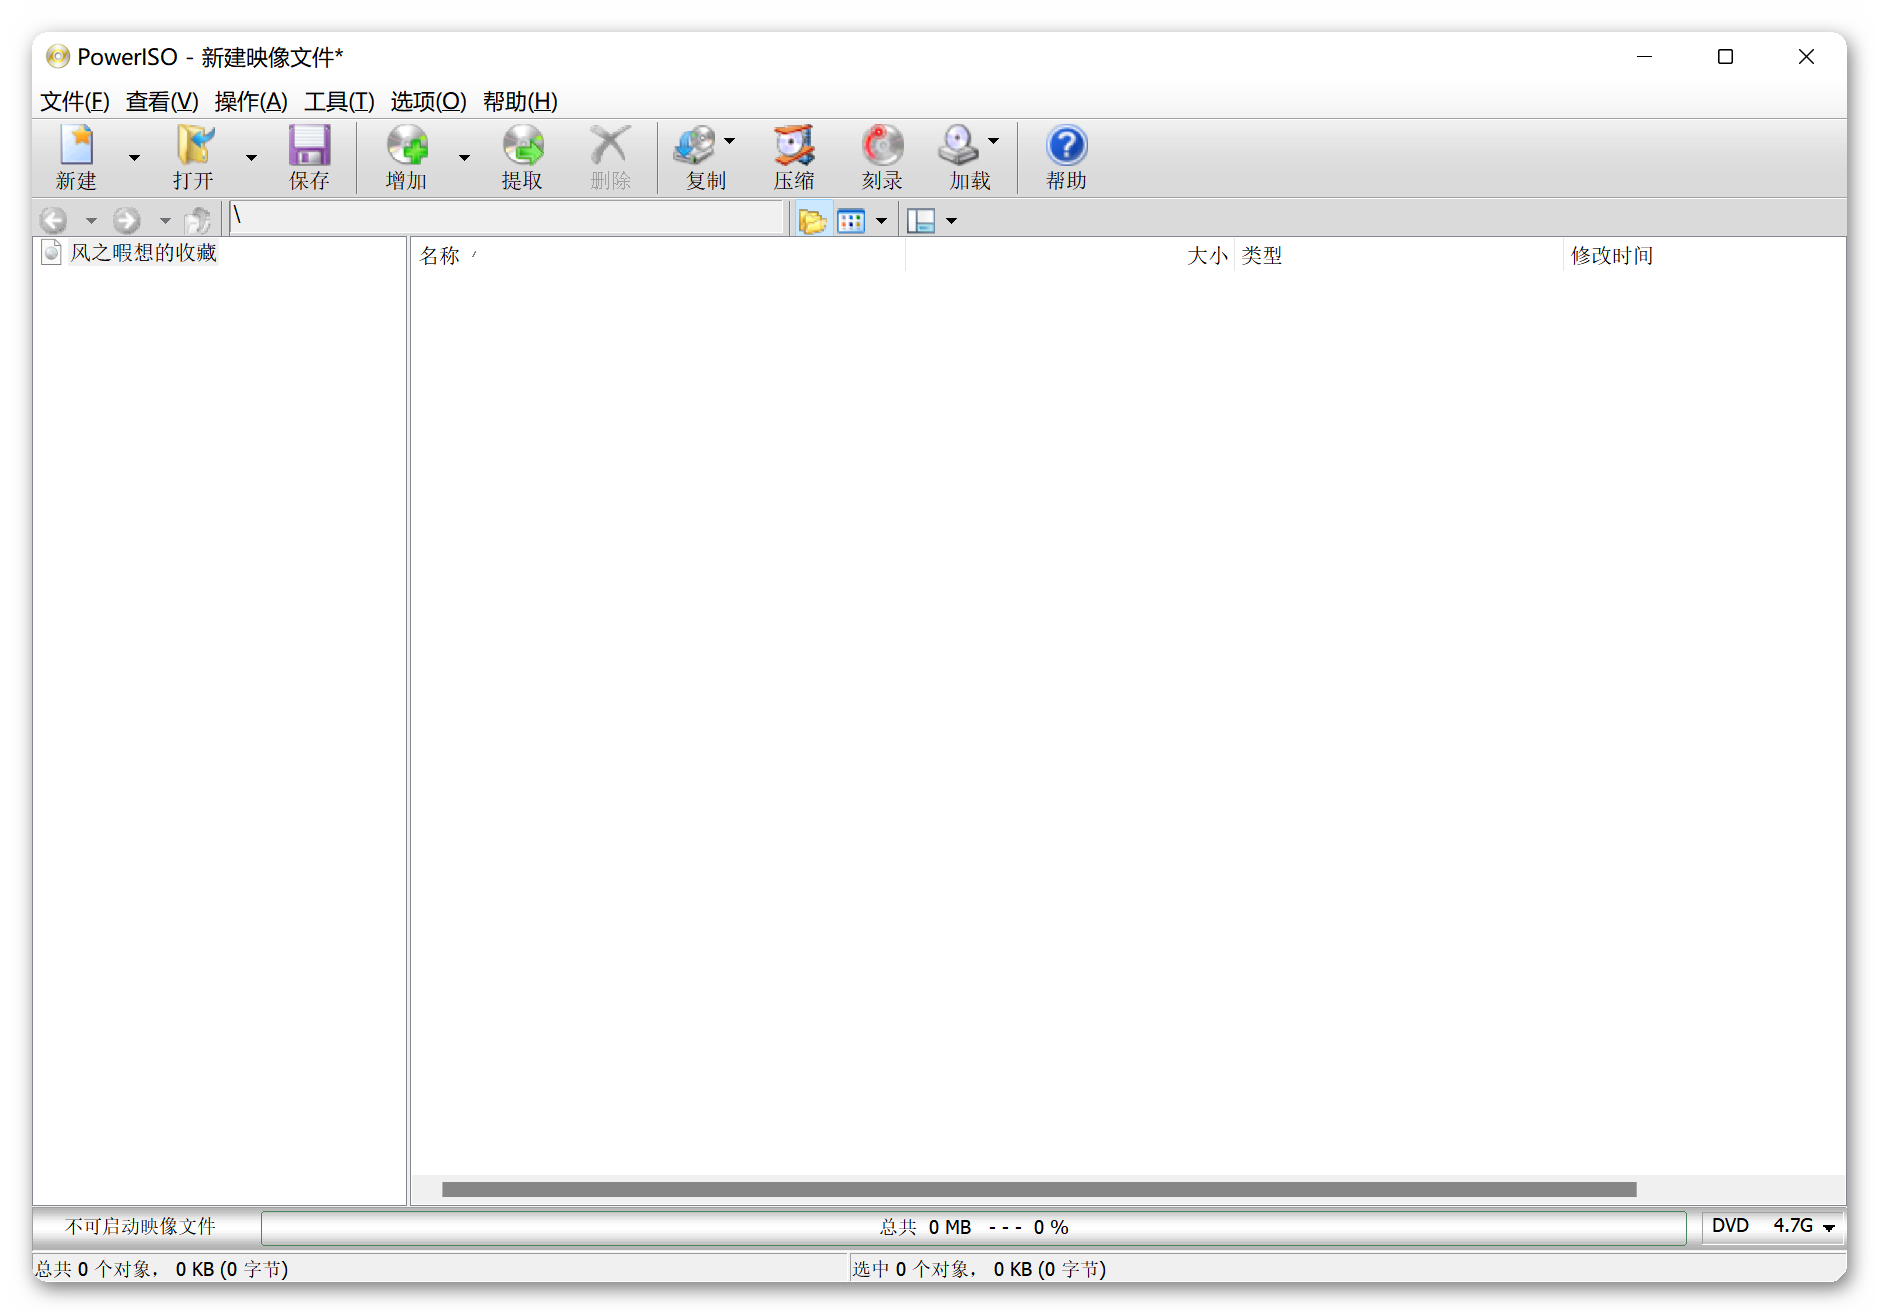 【网盘防和谐】PowerISO光盘映像编辑器v8.4.0便携版-程序员阿鑫-带你一起秃头-第1张图片